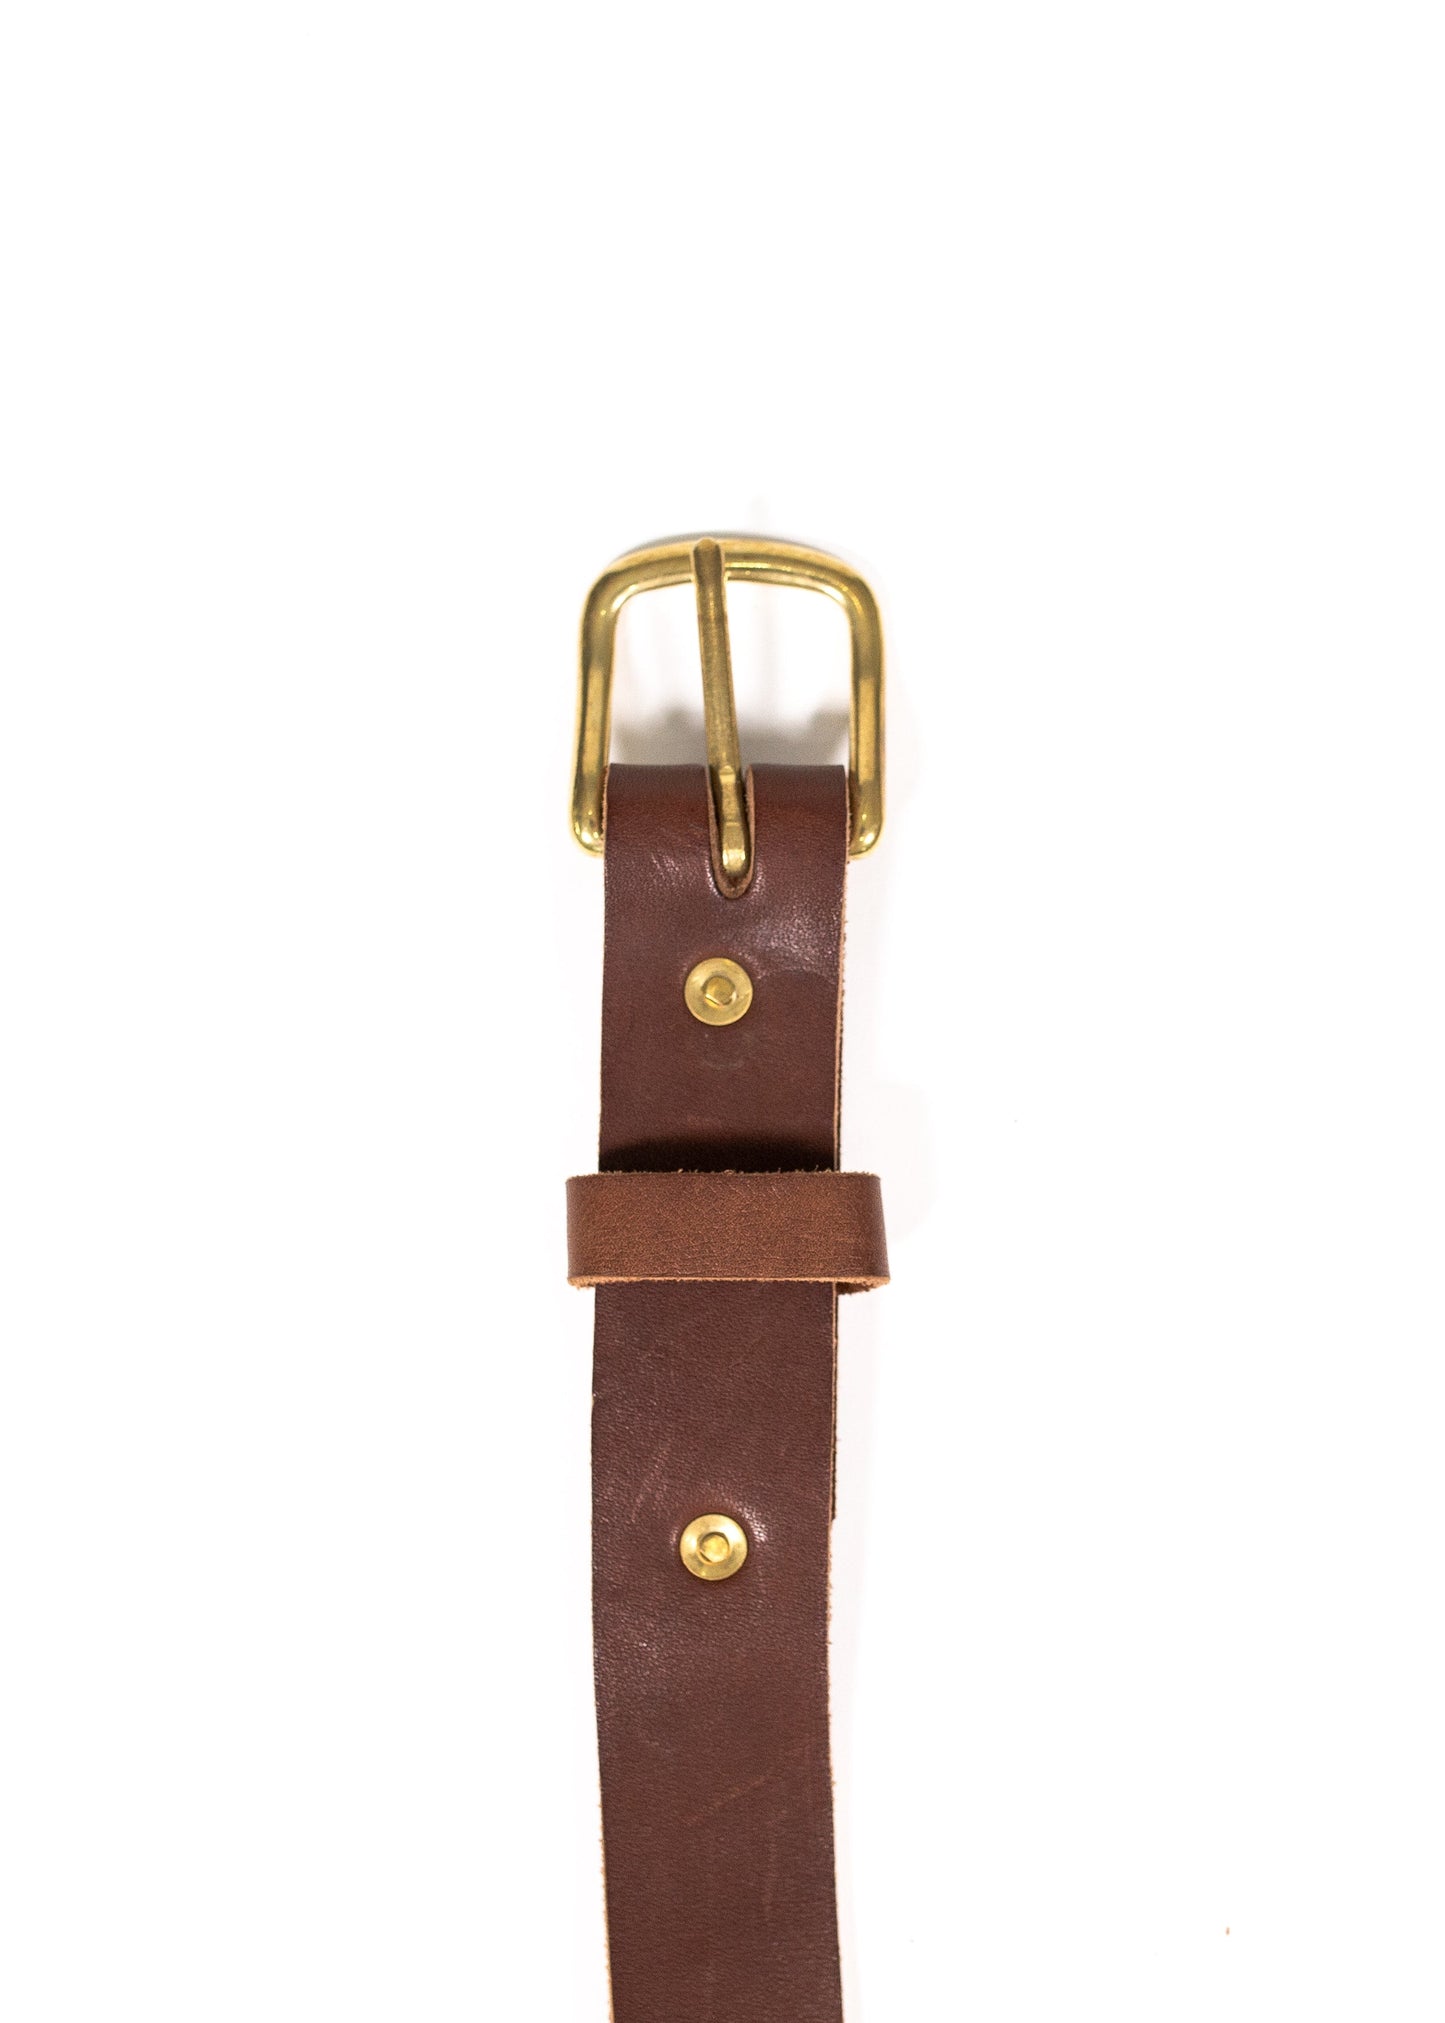 Roscoe Belt - 1 1/4 inch width - Wholesale